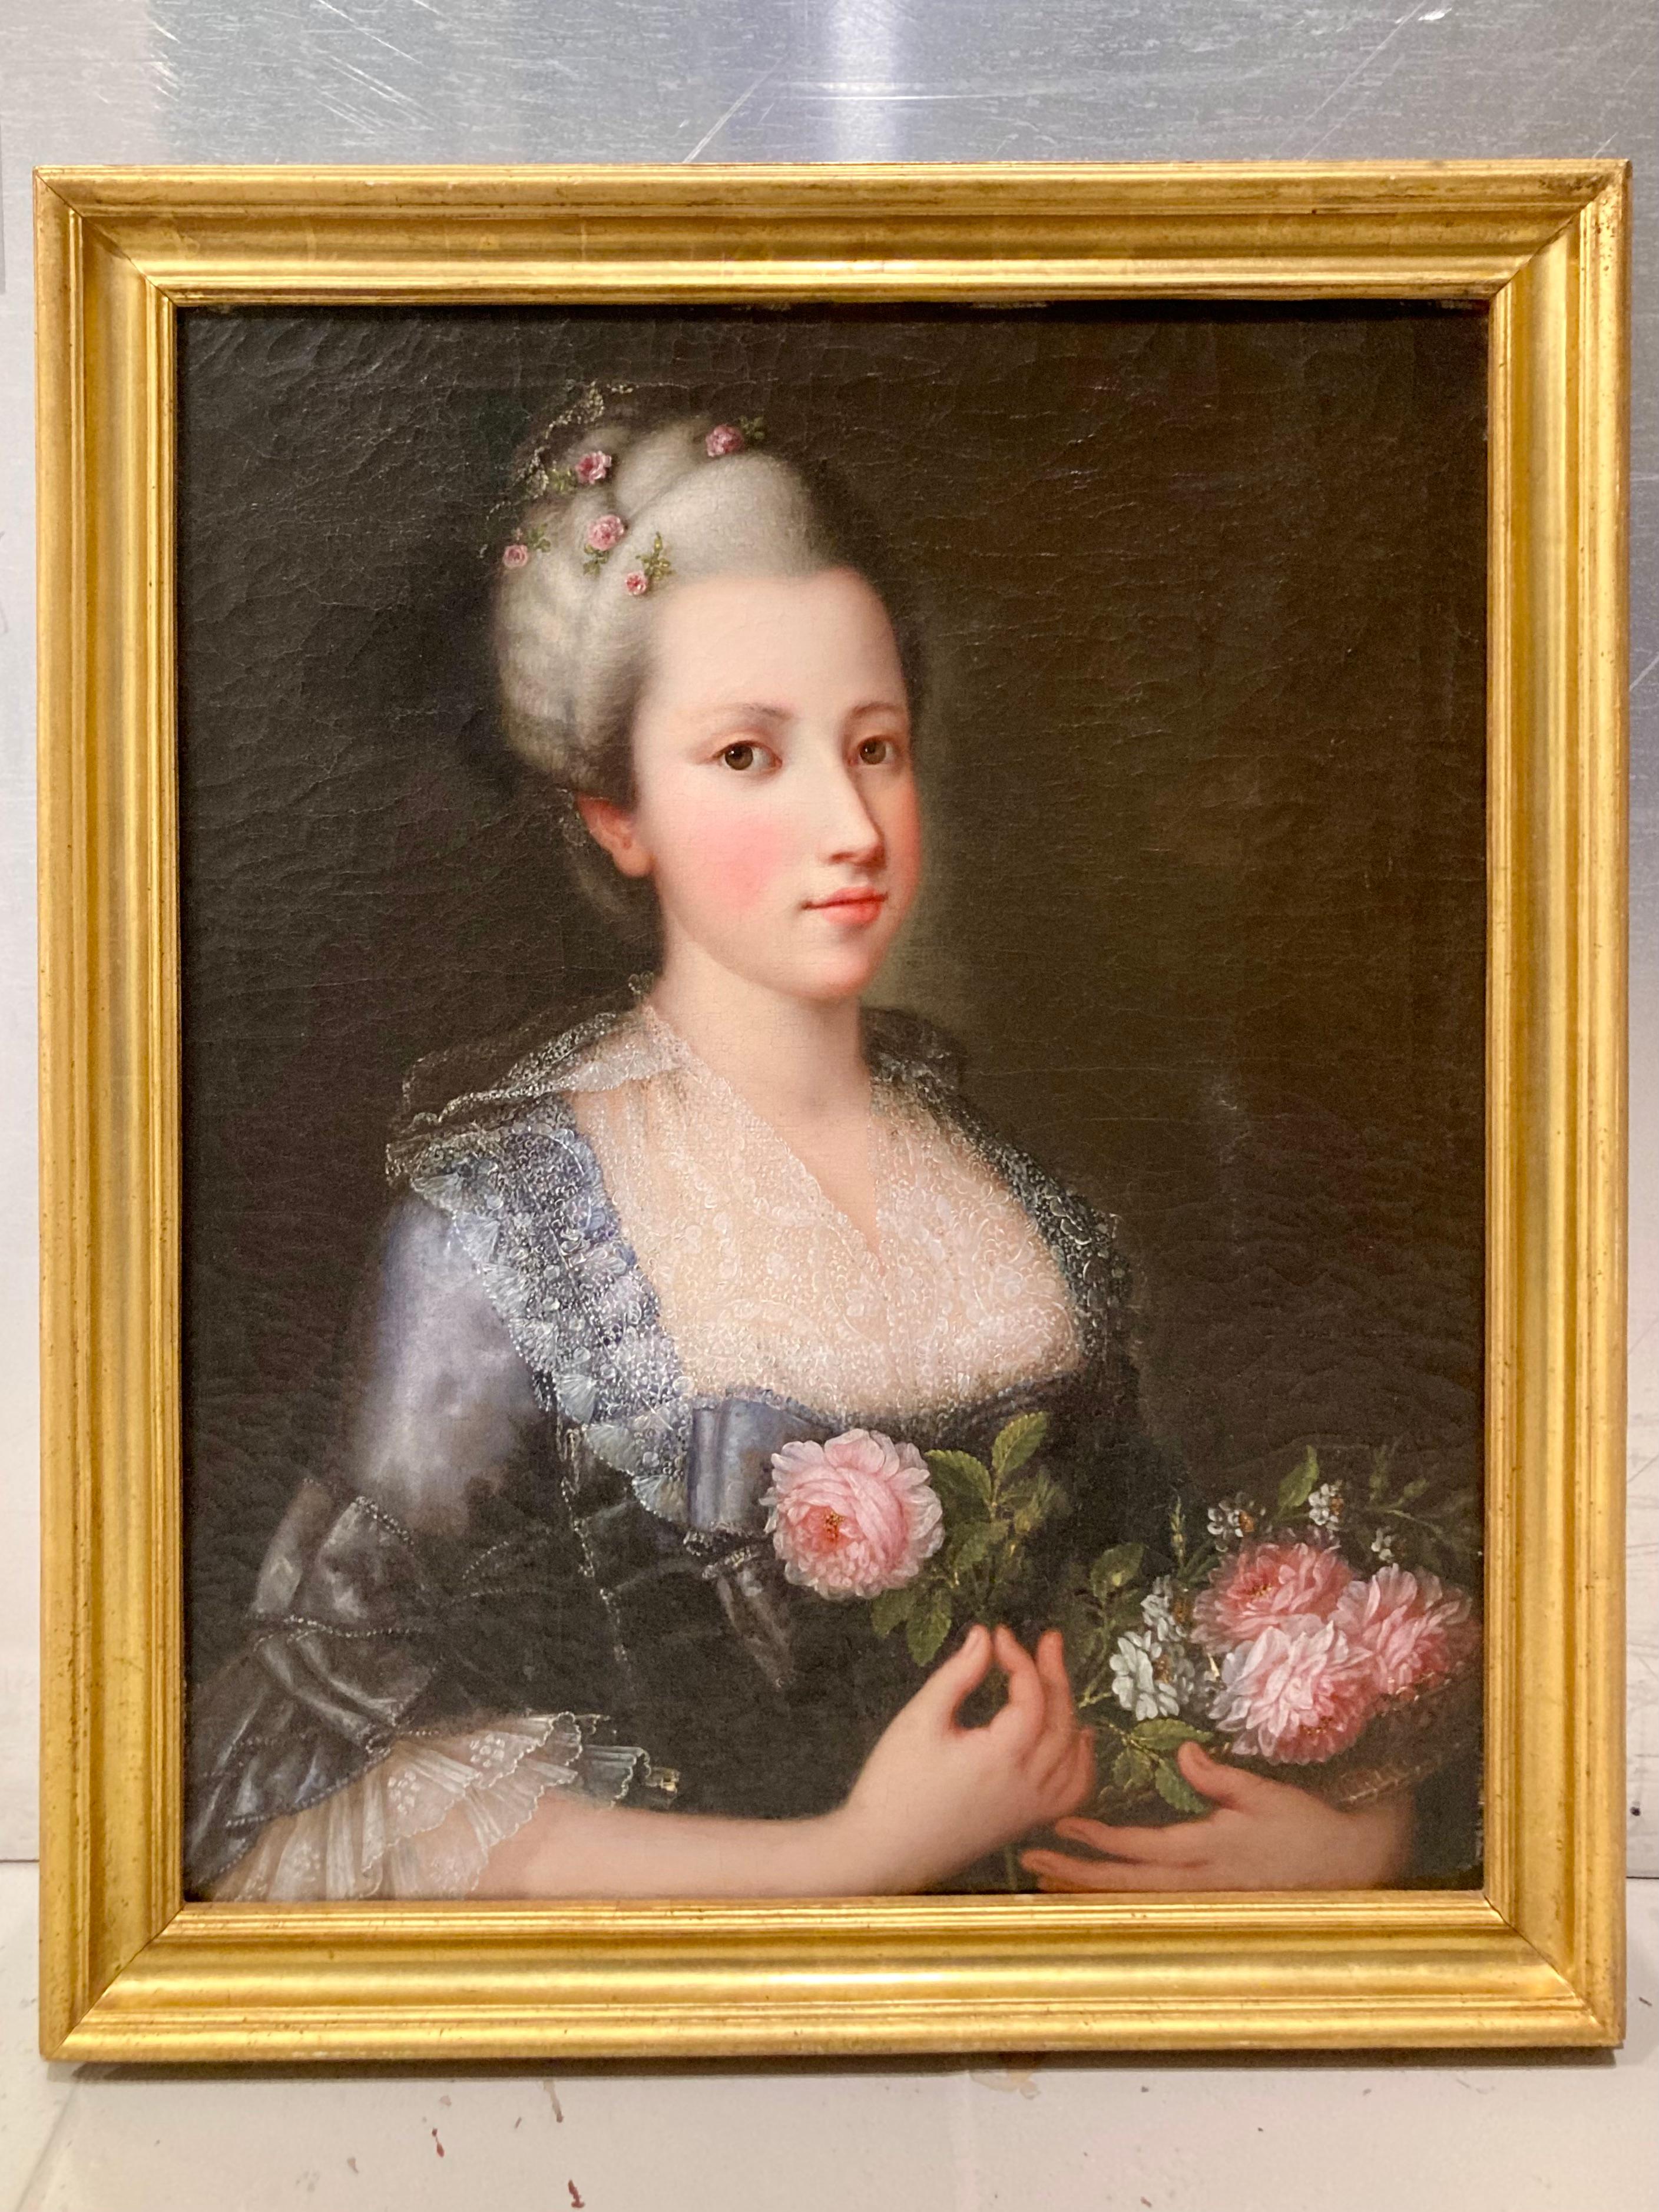 Magnifique portrait de femme italien du 18e siècle. Des détails étonnants, en particulier avec les tissus. Joliment encadré et prêt à être accroché dans votre maison.